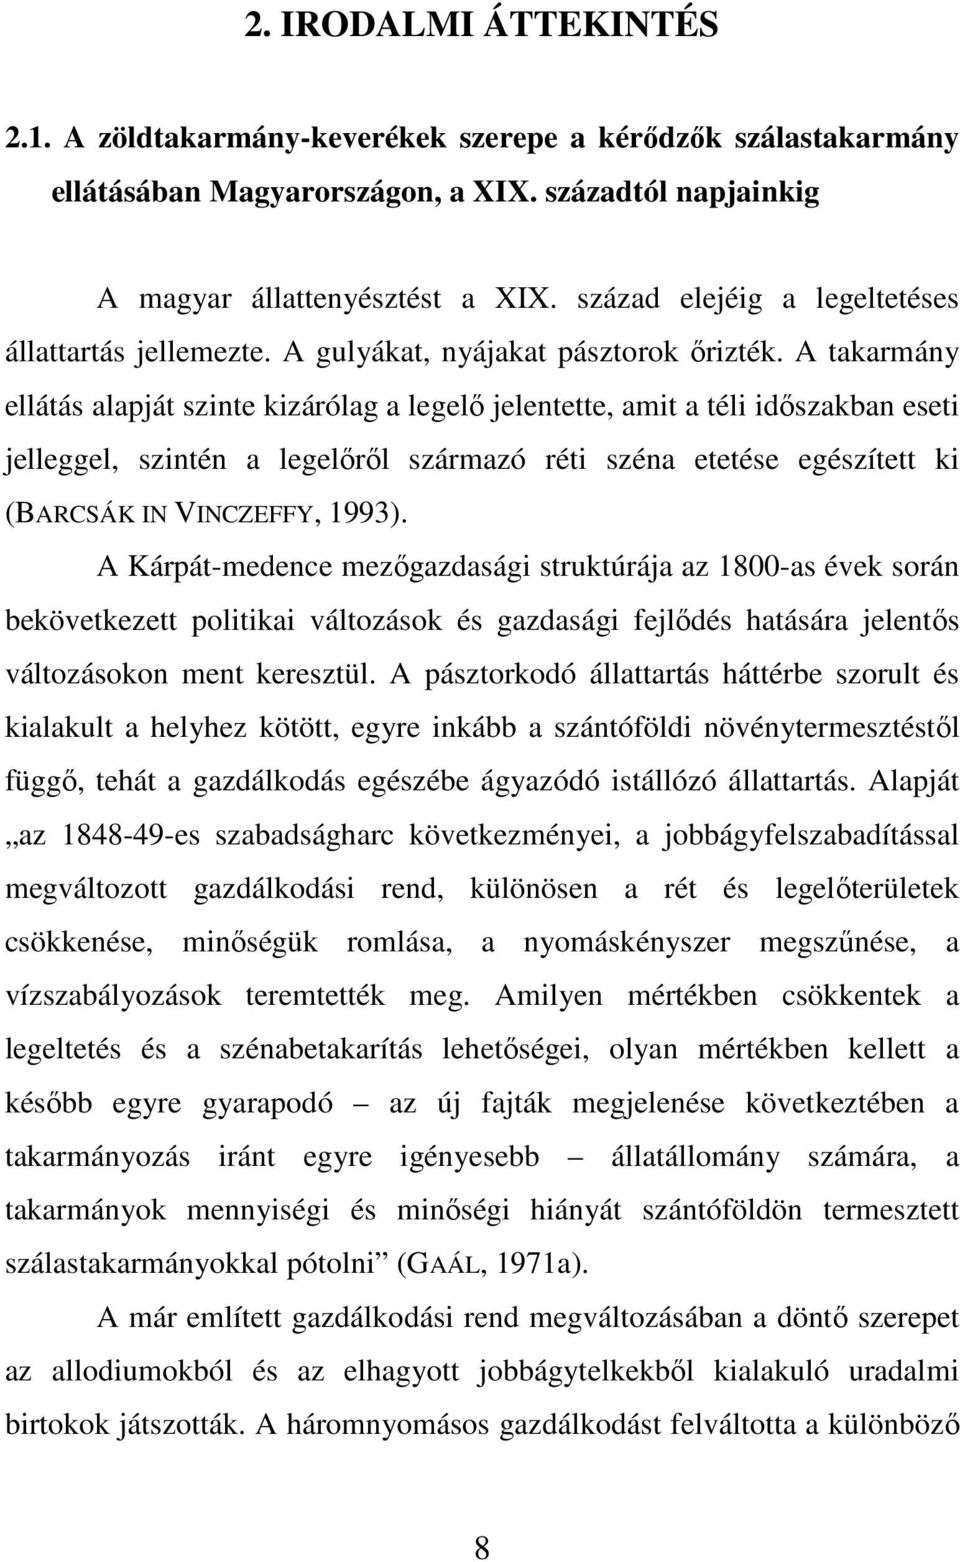 A takarmány ellátás alapját szinte kizárólag a legelı jelentette, amit a téli idıszakban eseti jelleggel, szintén a legelırıl származó réti széna etetése egészített ki (BARCSÁK IN VINCZEFFY, 1993).